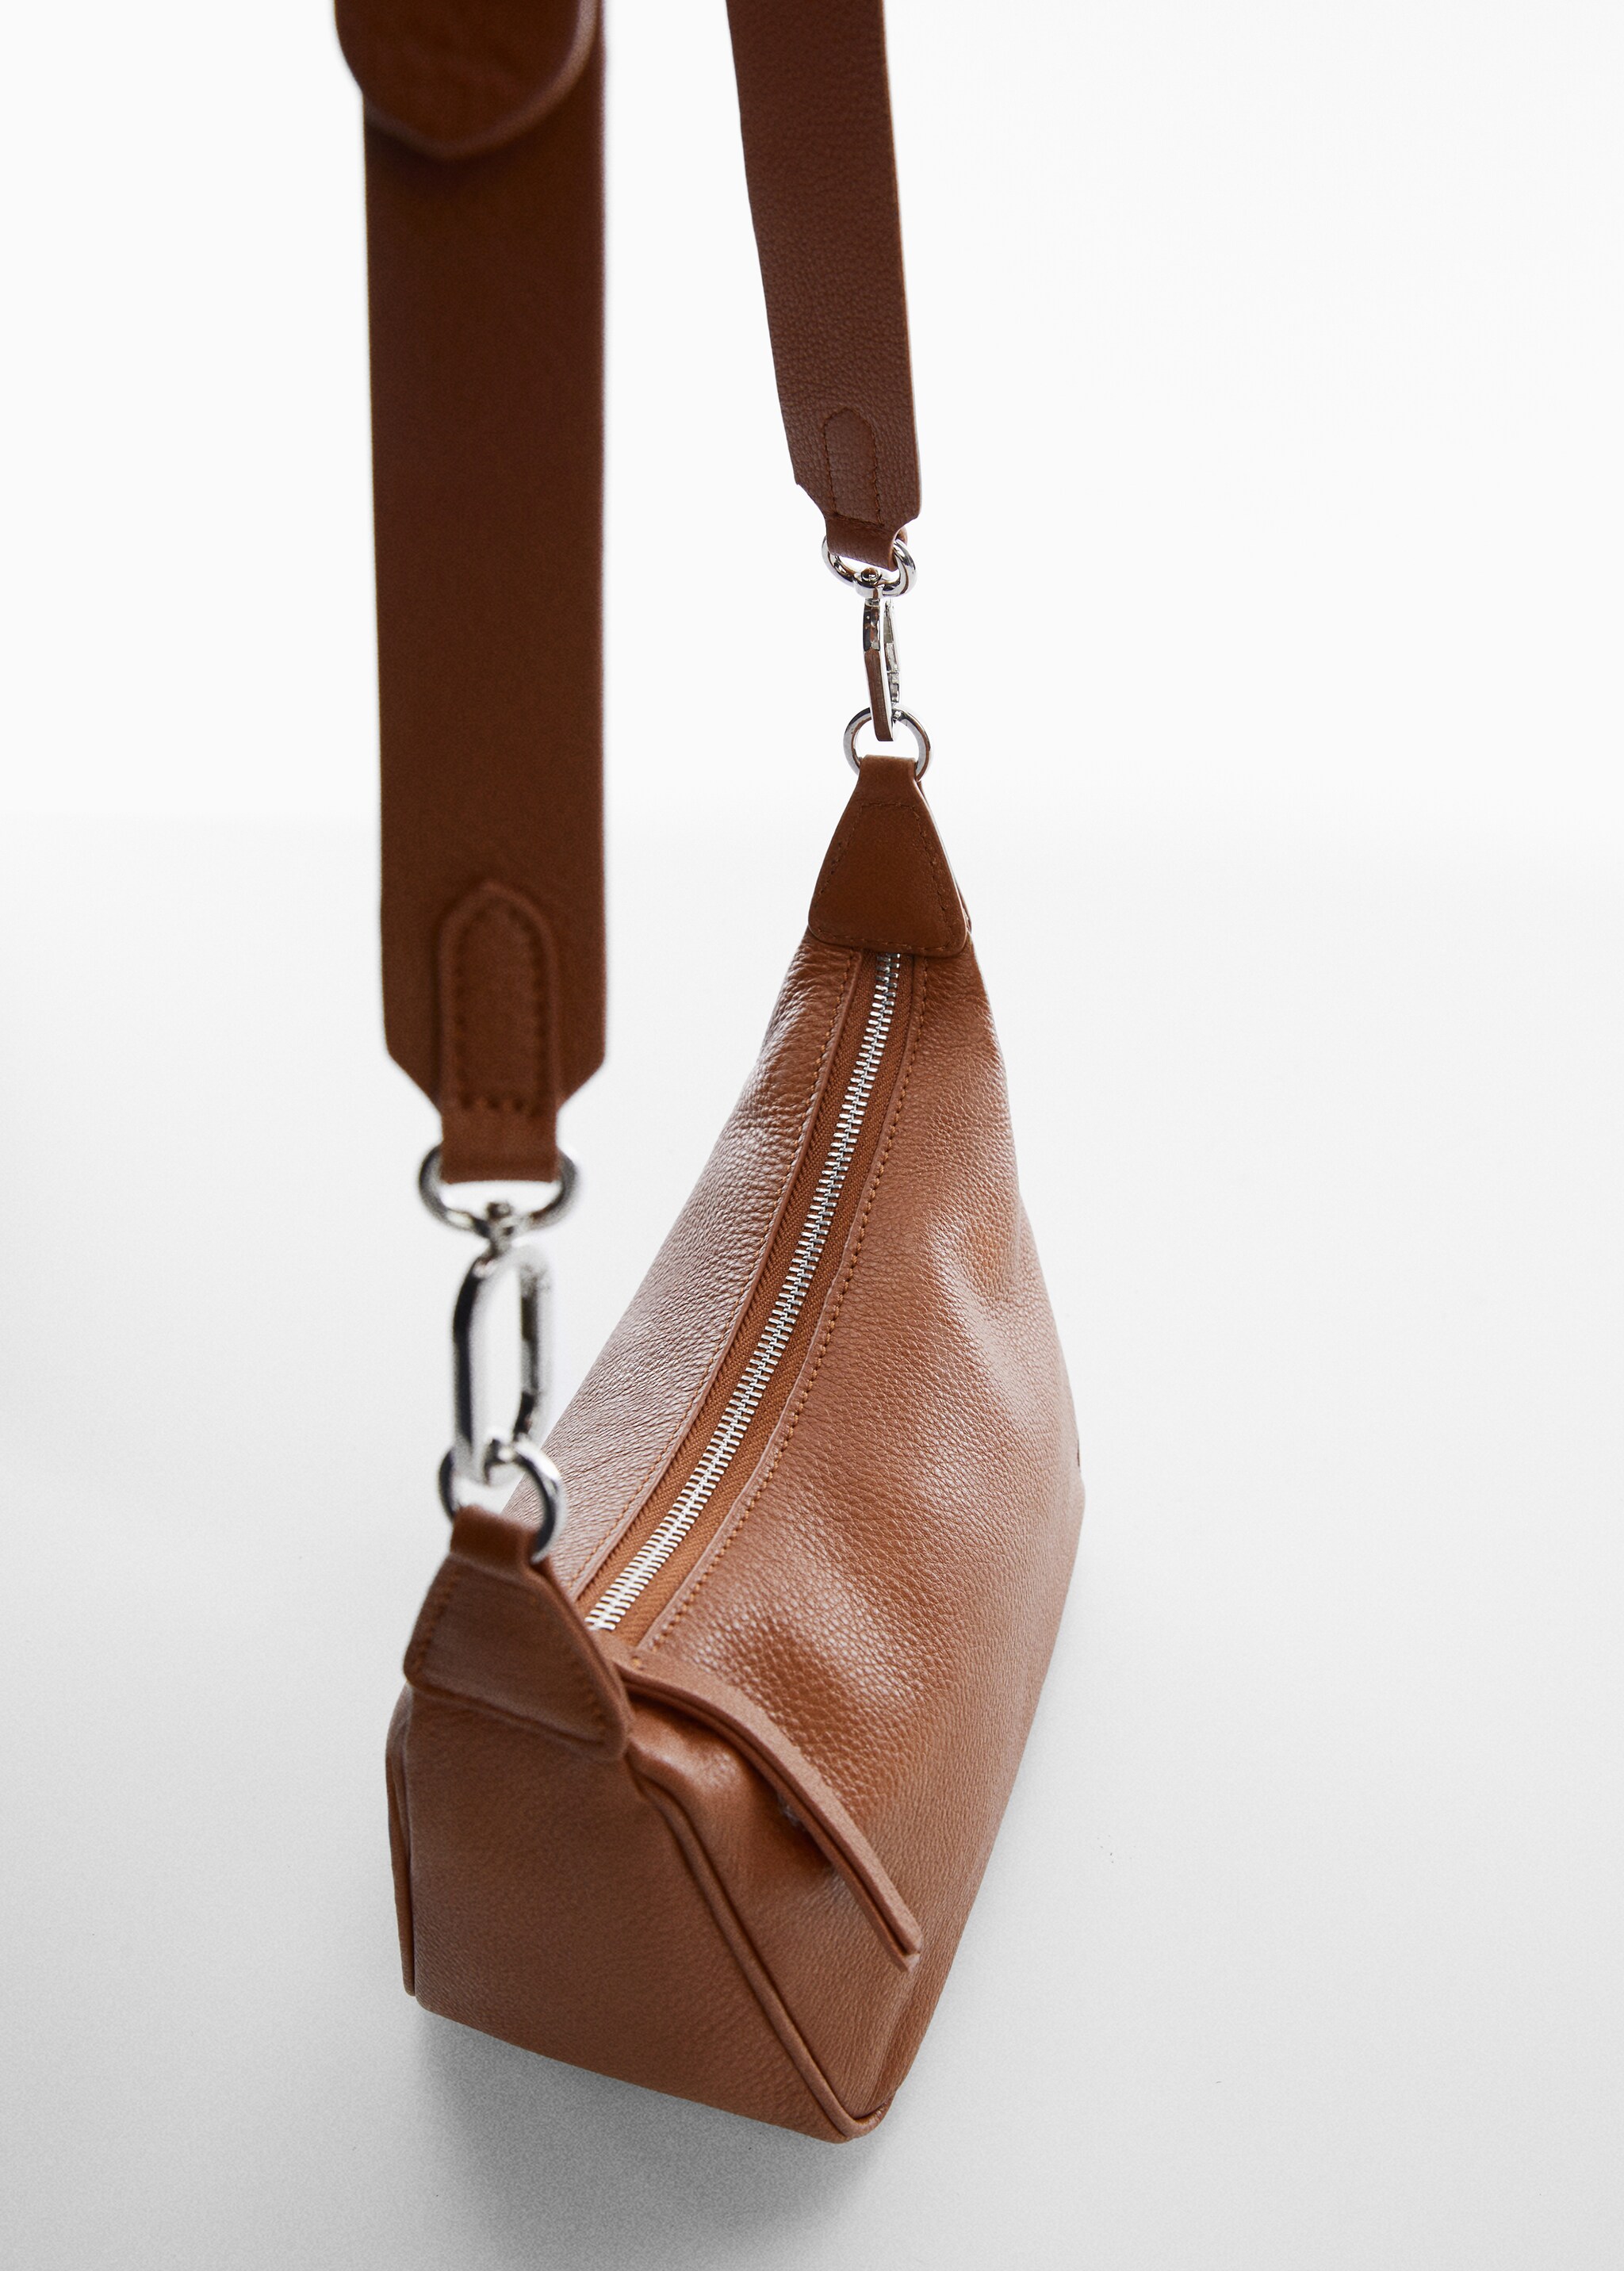 Leather shoulder bag - Details of the article 1